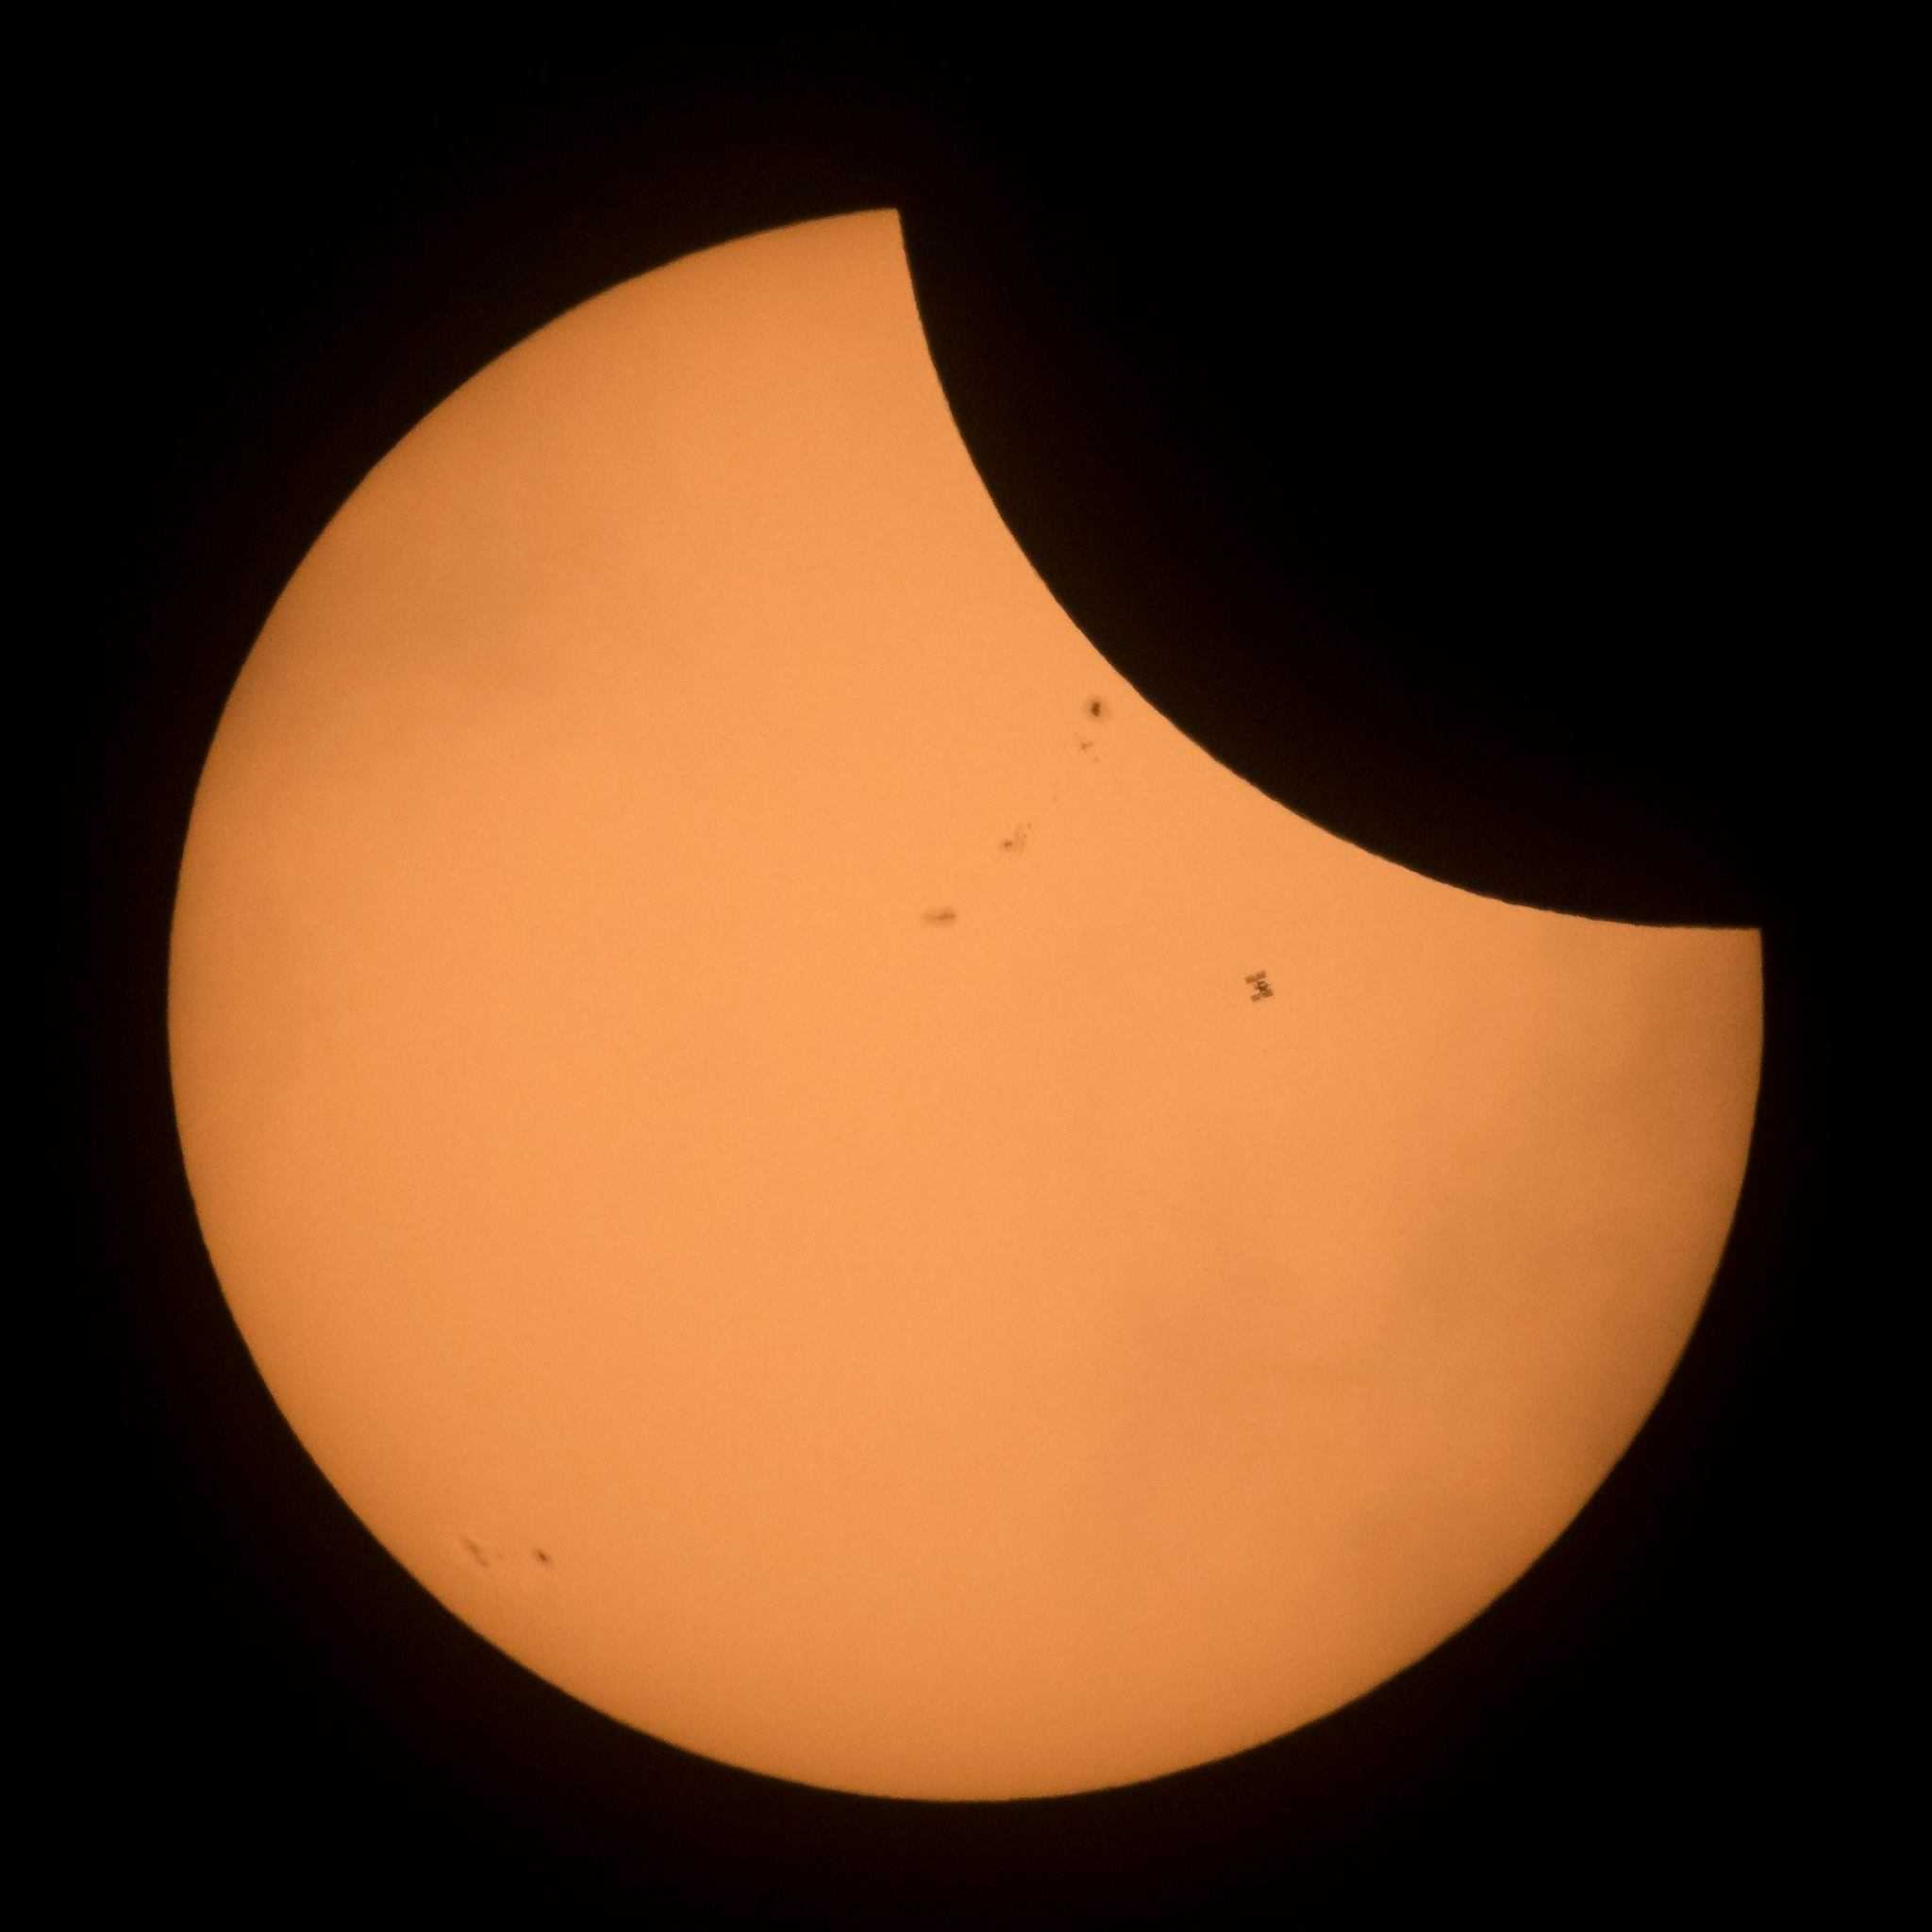 Observar el eclipse solar con seguridad